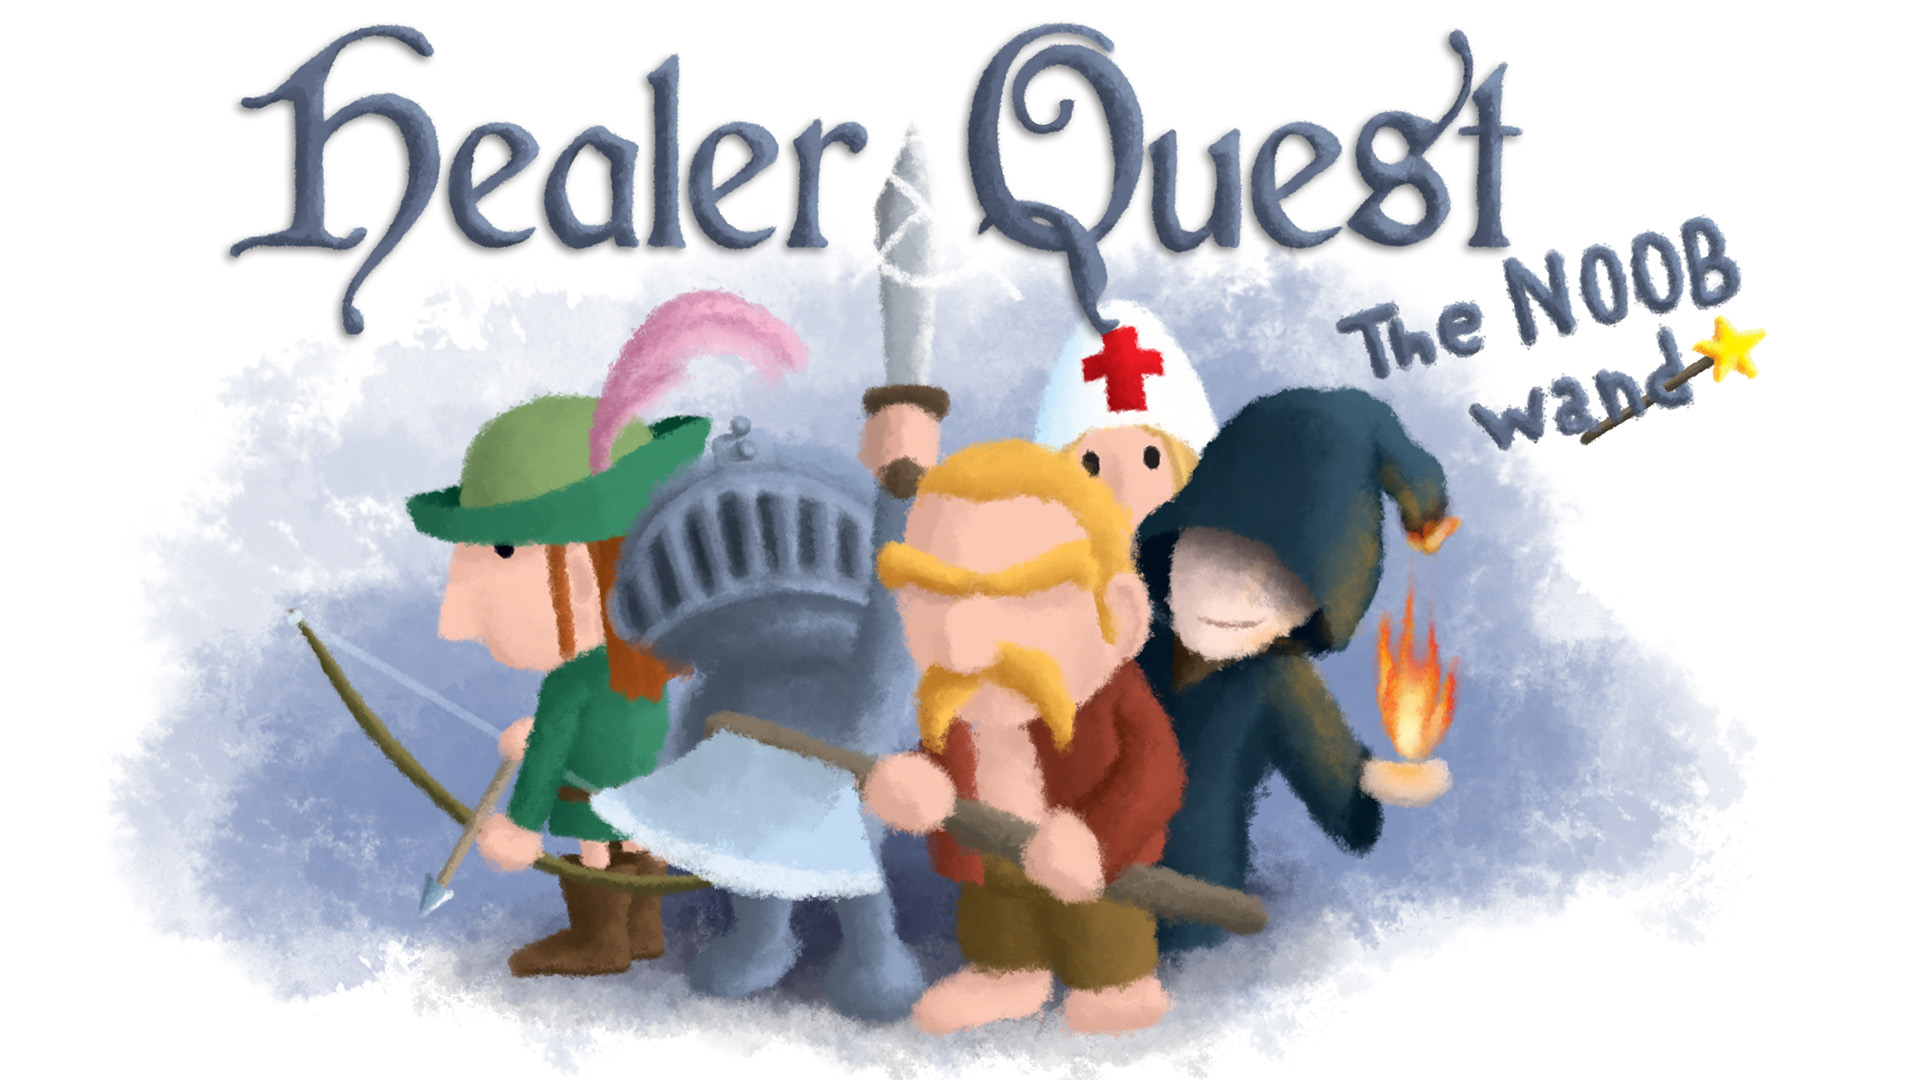 Healer Quest